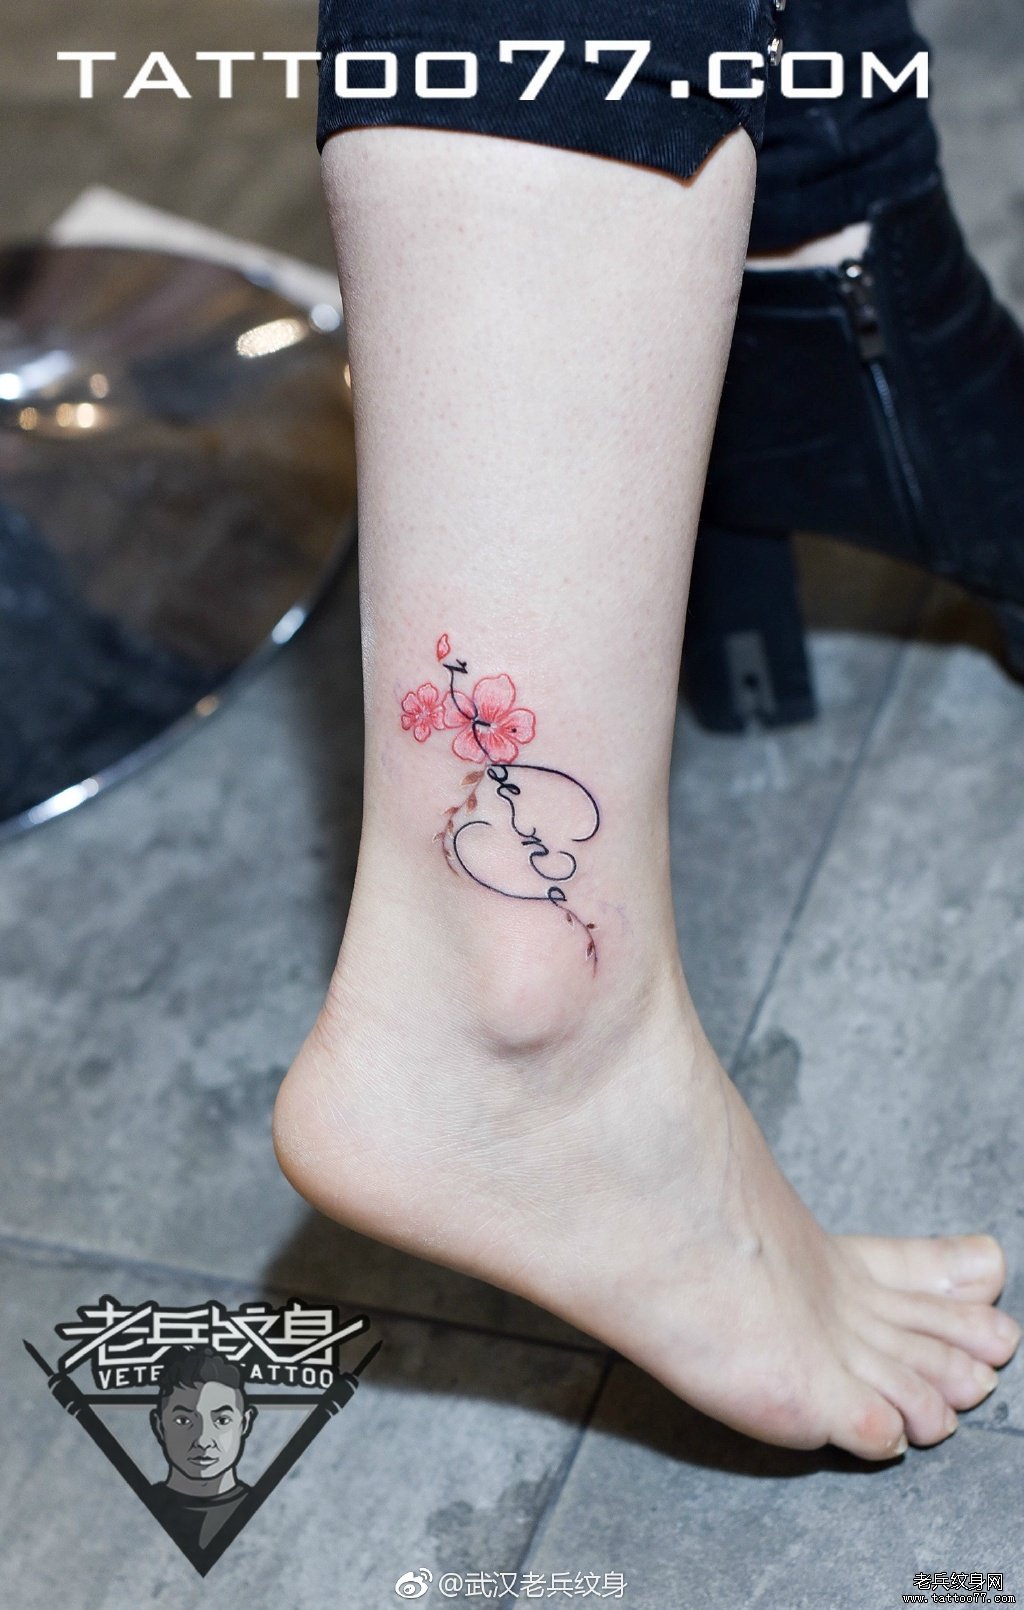 武汉女纹身师打造的脚踝樱花字母纹身图案作品